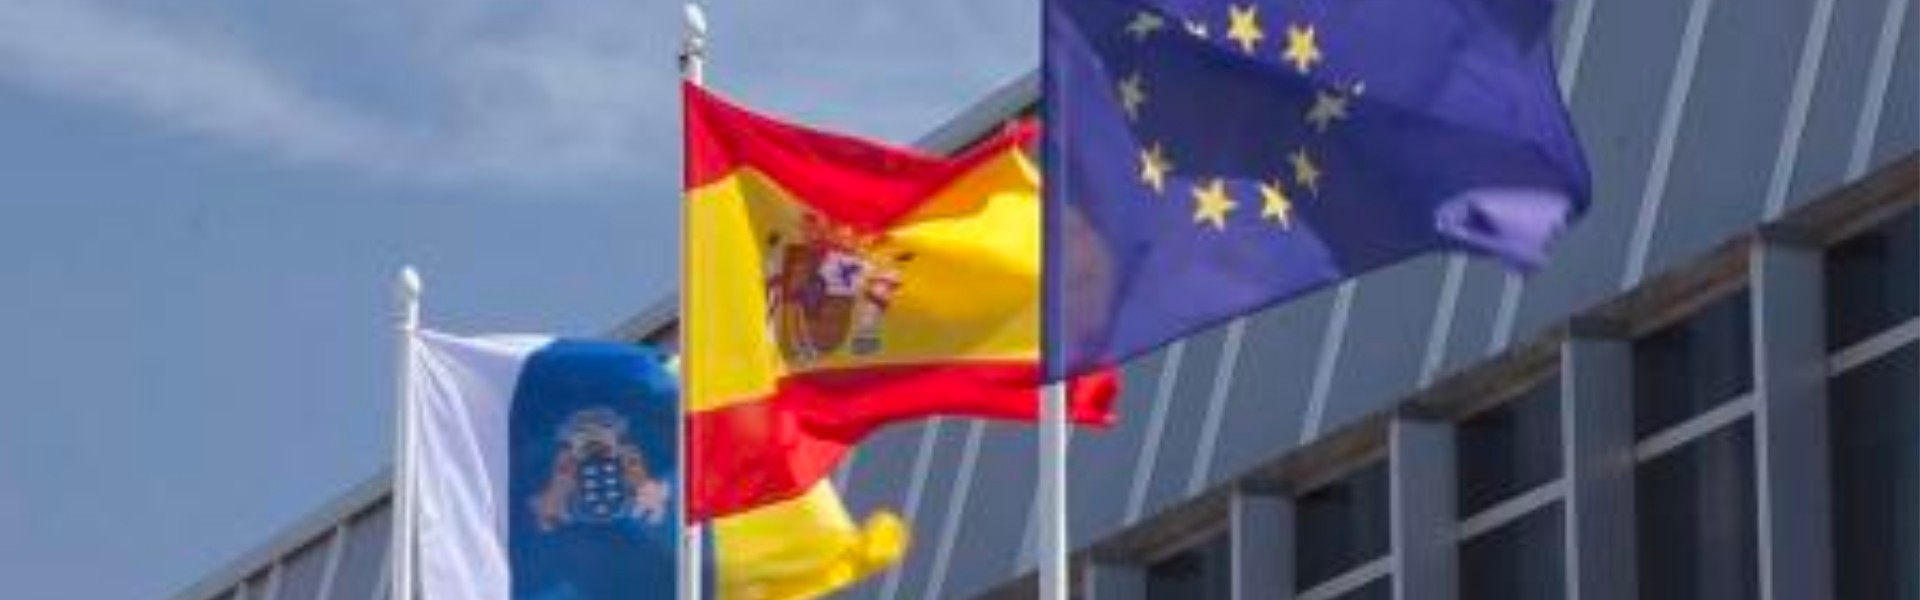 Banderas de Canarias, España y Unión Europea